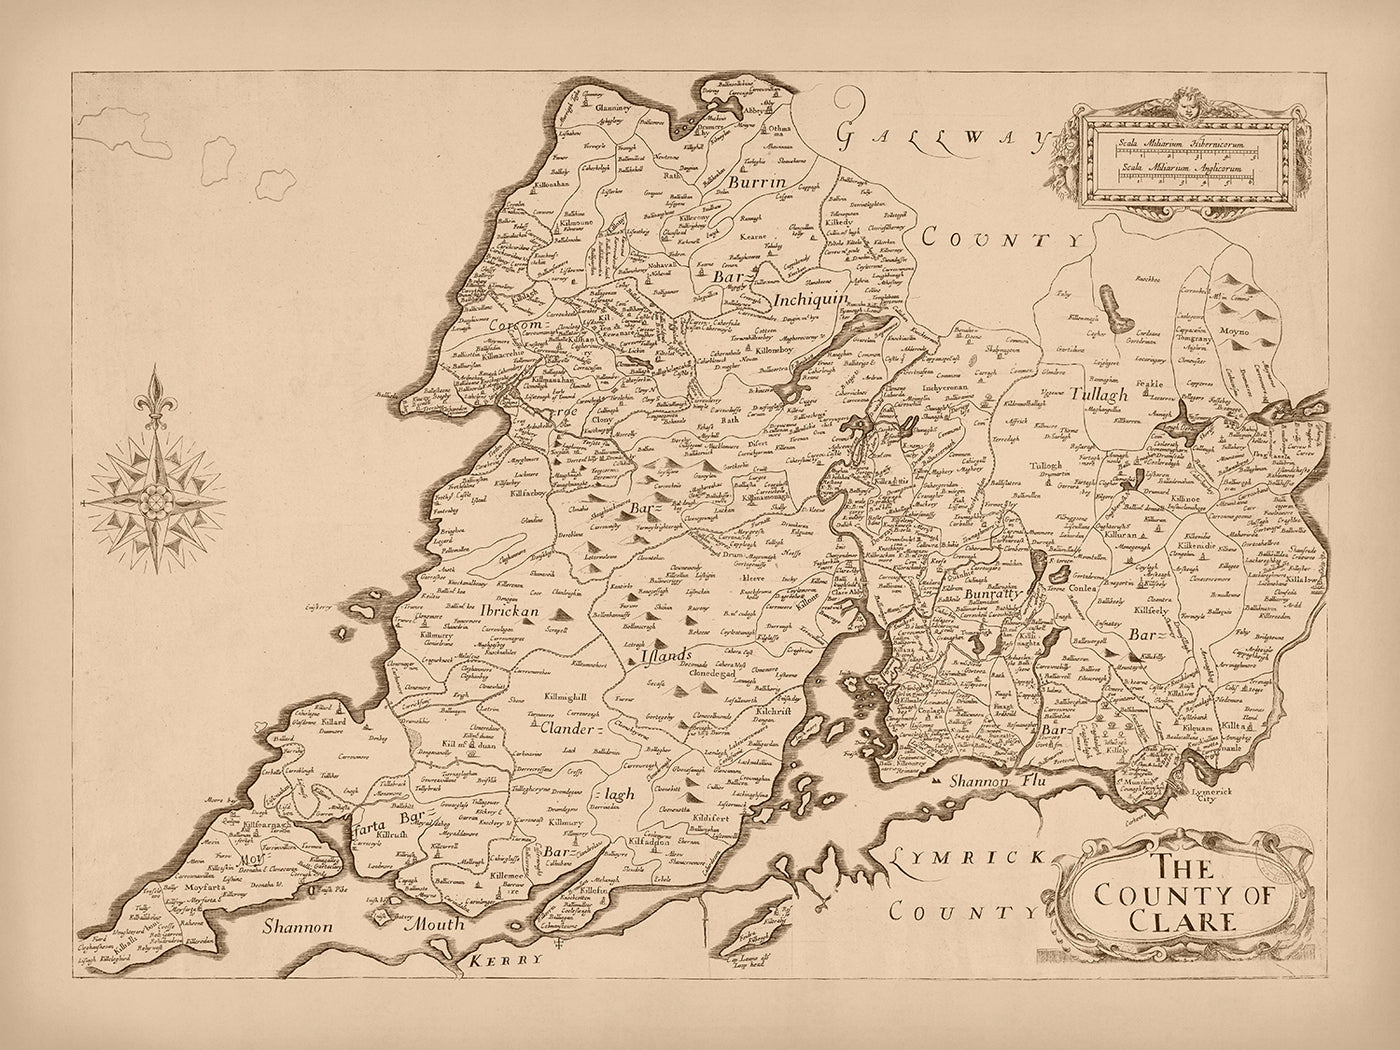 Mapa antiguo del condado de Clare por Petty, 1685: Castillo de Bunratty, Acantilados de Moher, The Burren, Loop Head, Kilrush